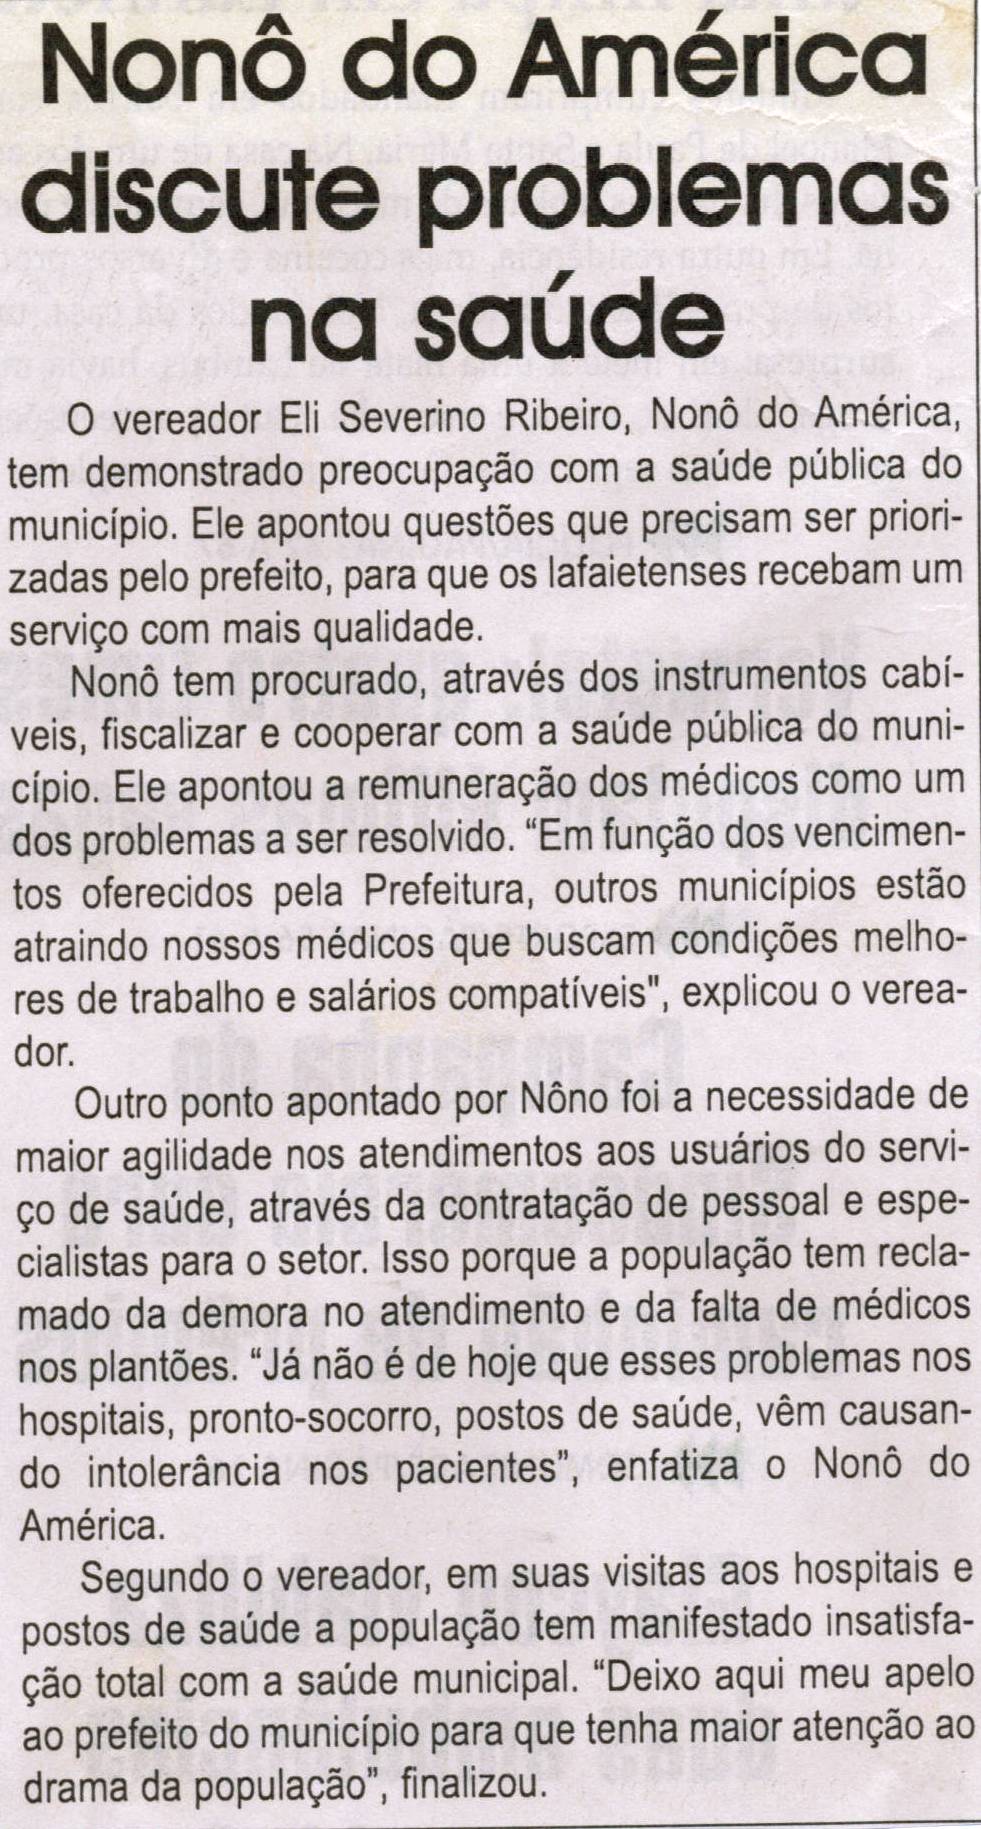 Nonô do América discute problemas na saúde. Jornal Correio da Cidade, 21 abr. 2012, p. 02.